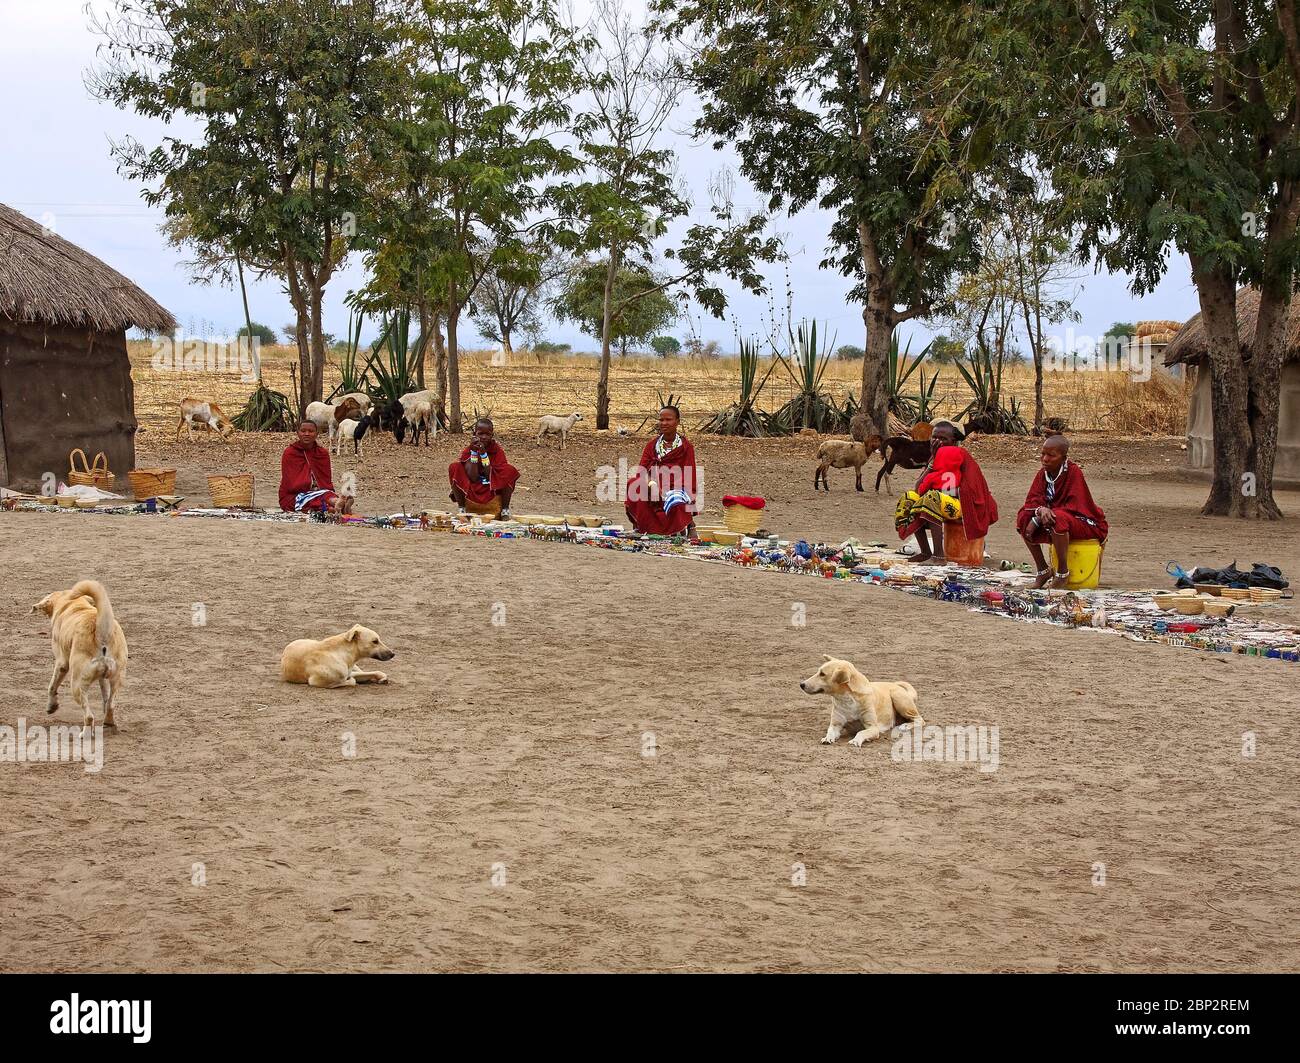 Maasai Dorf; einheimische Frauen, Verkauf von handgefertigten Gegenständen, 3 Hunde, Ziegen, Perlen Arbeit, Stroh-Objekte, Tansania; Afrika Stockfoto